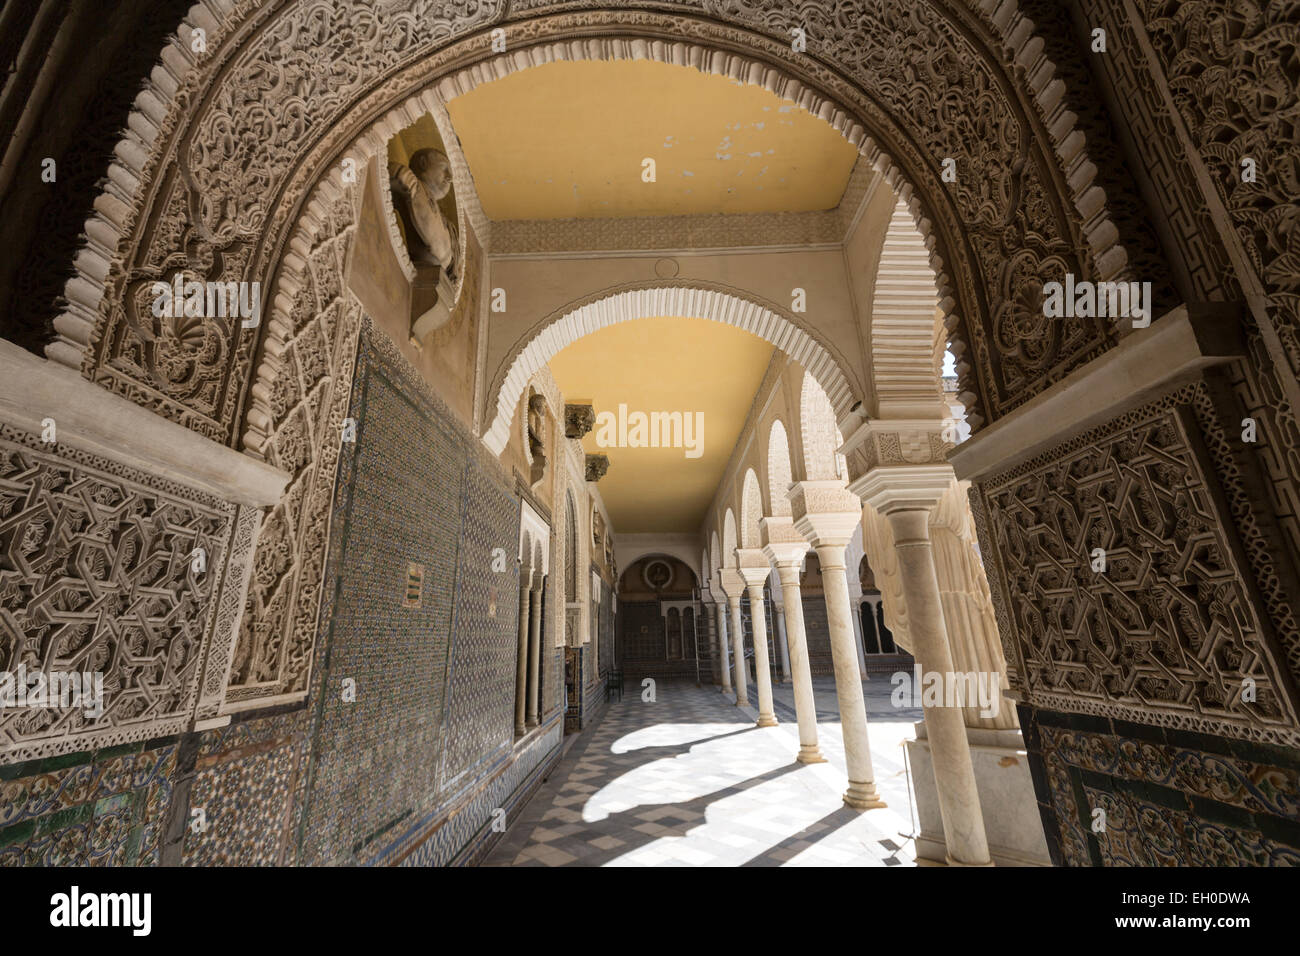 Entrance to Casa de Pilatos courtyard, an Andalisian palace in Seville Stock Photo